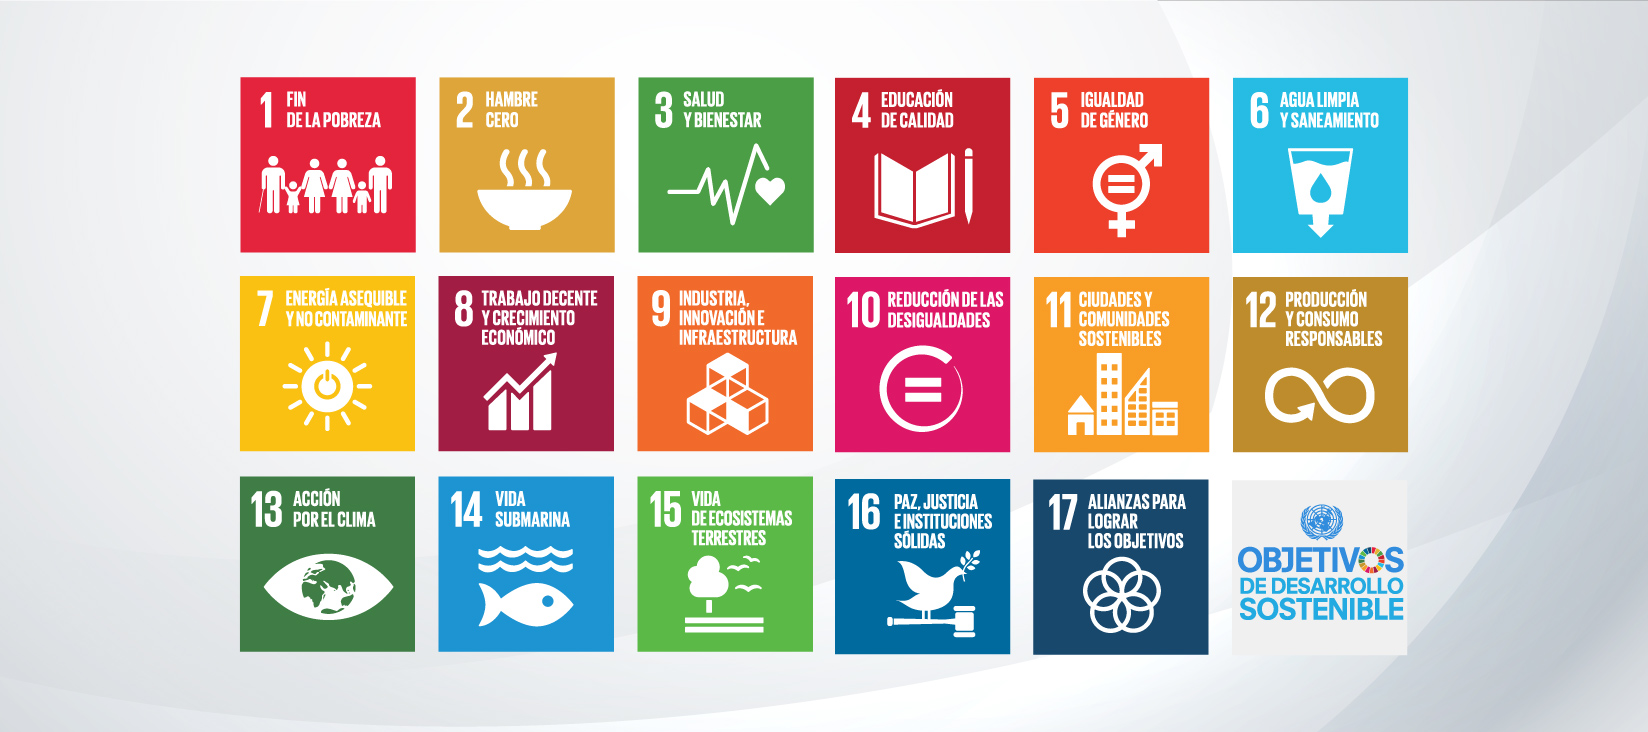 Bienvenido a Consejo Estatal de Agenda 2030 para el Desarrollo Sostenible | Consejo Estatal la Agenda para el Desarrollo Sostenible